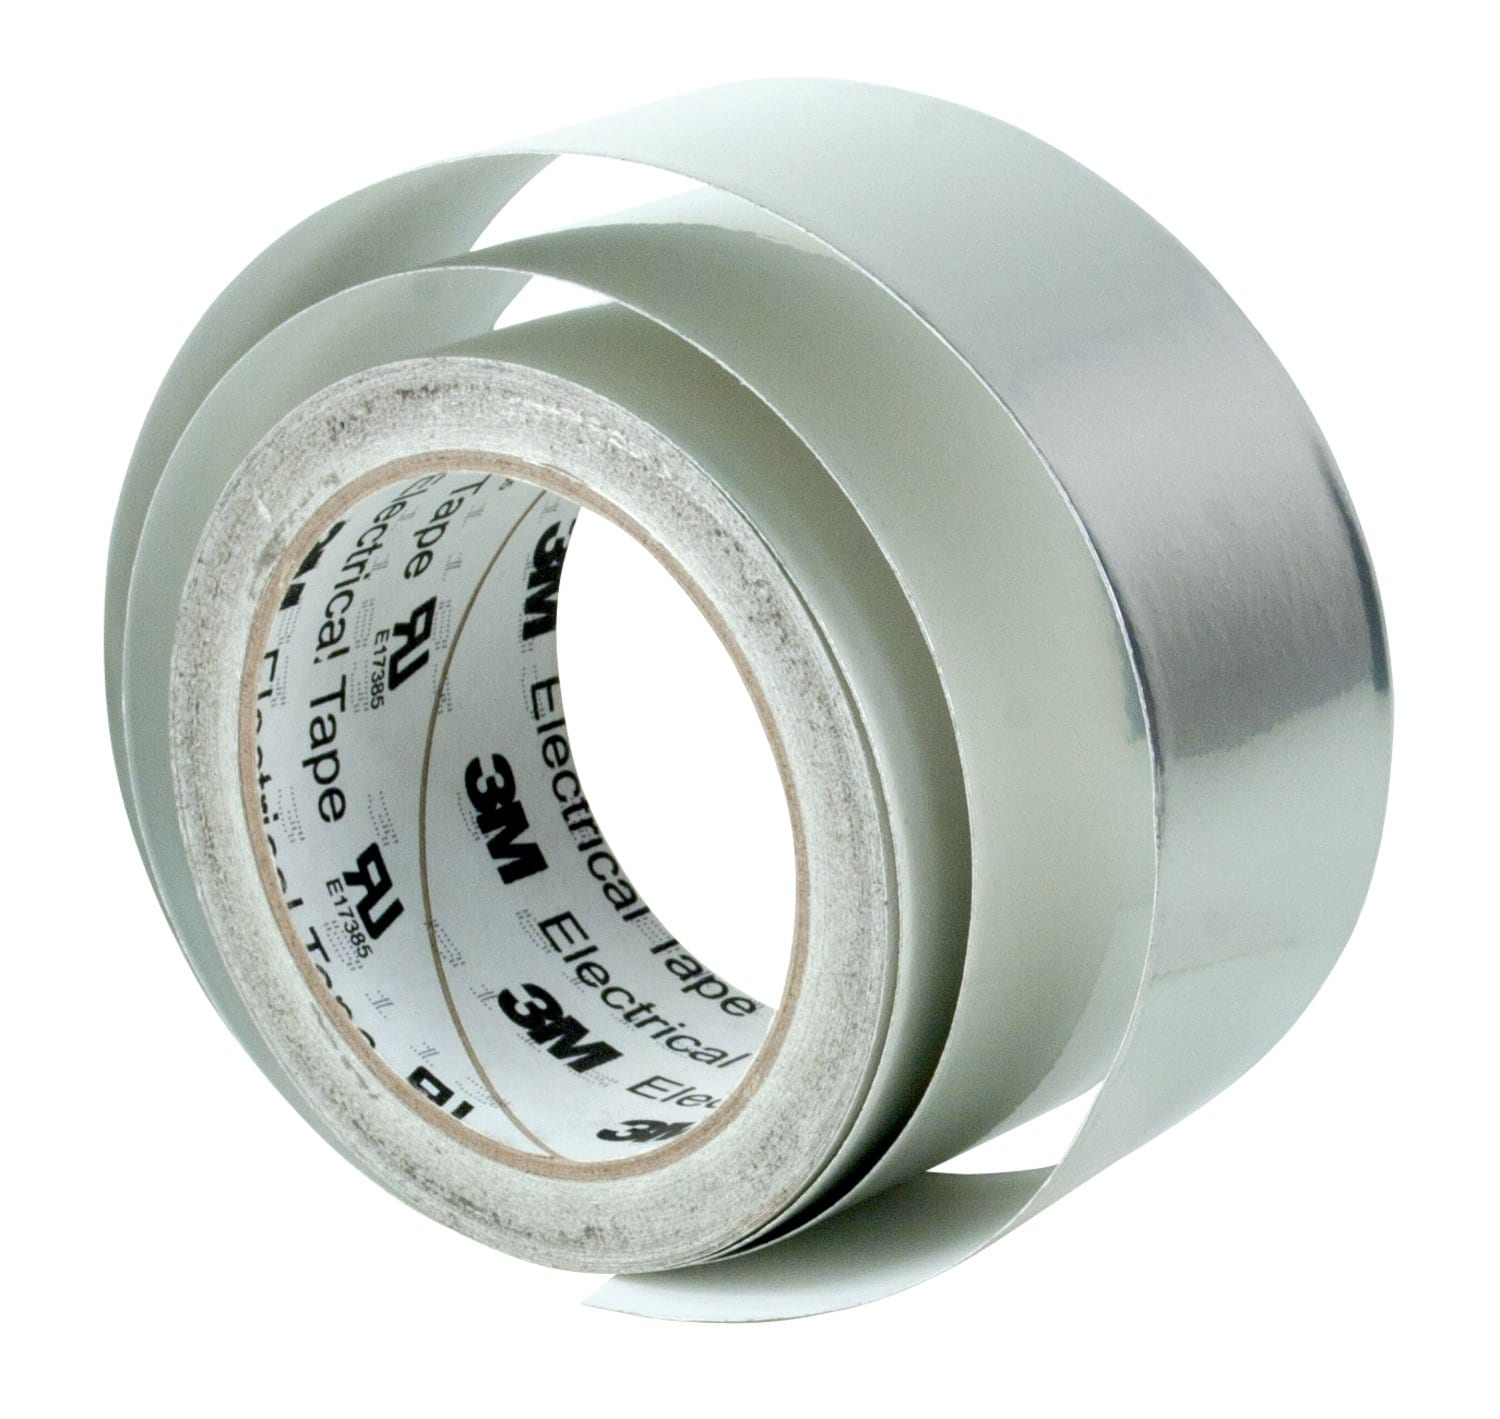 7010397204 - 3M Tin-Plated Copper Foil EMI Shielding Tape 1183, 2-1/2 in x 18 yd, 3
in Paper Core, 5 Rolls/Case